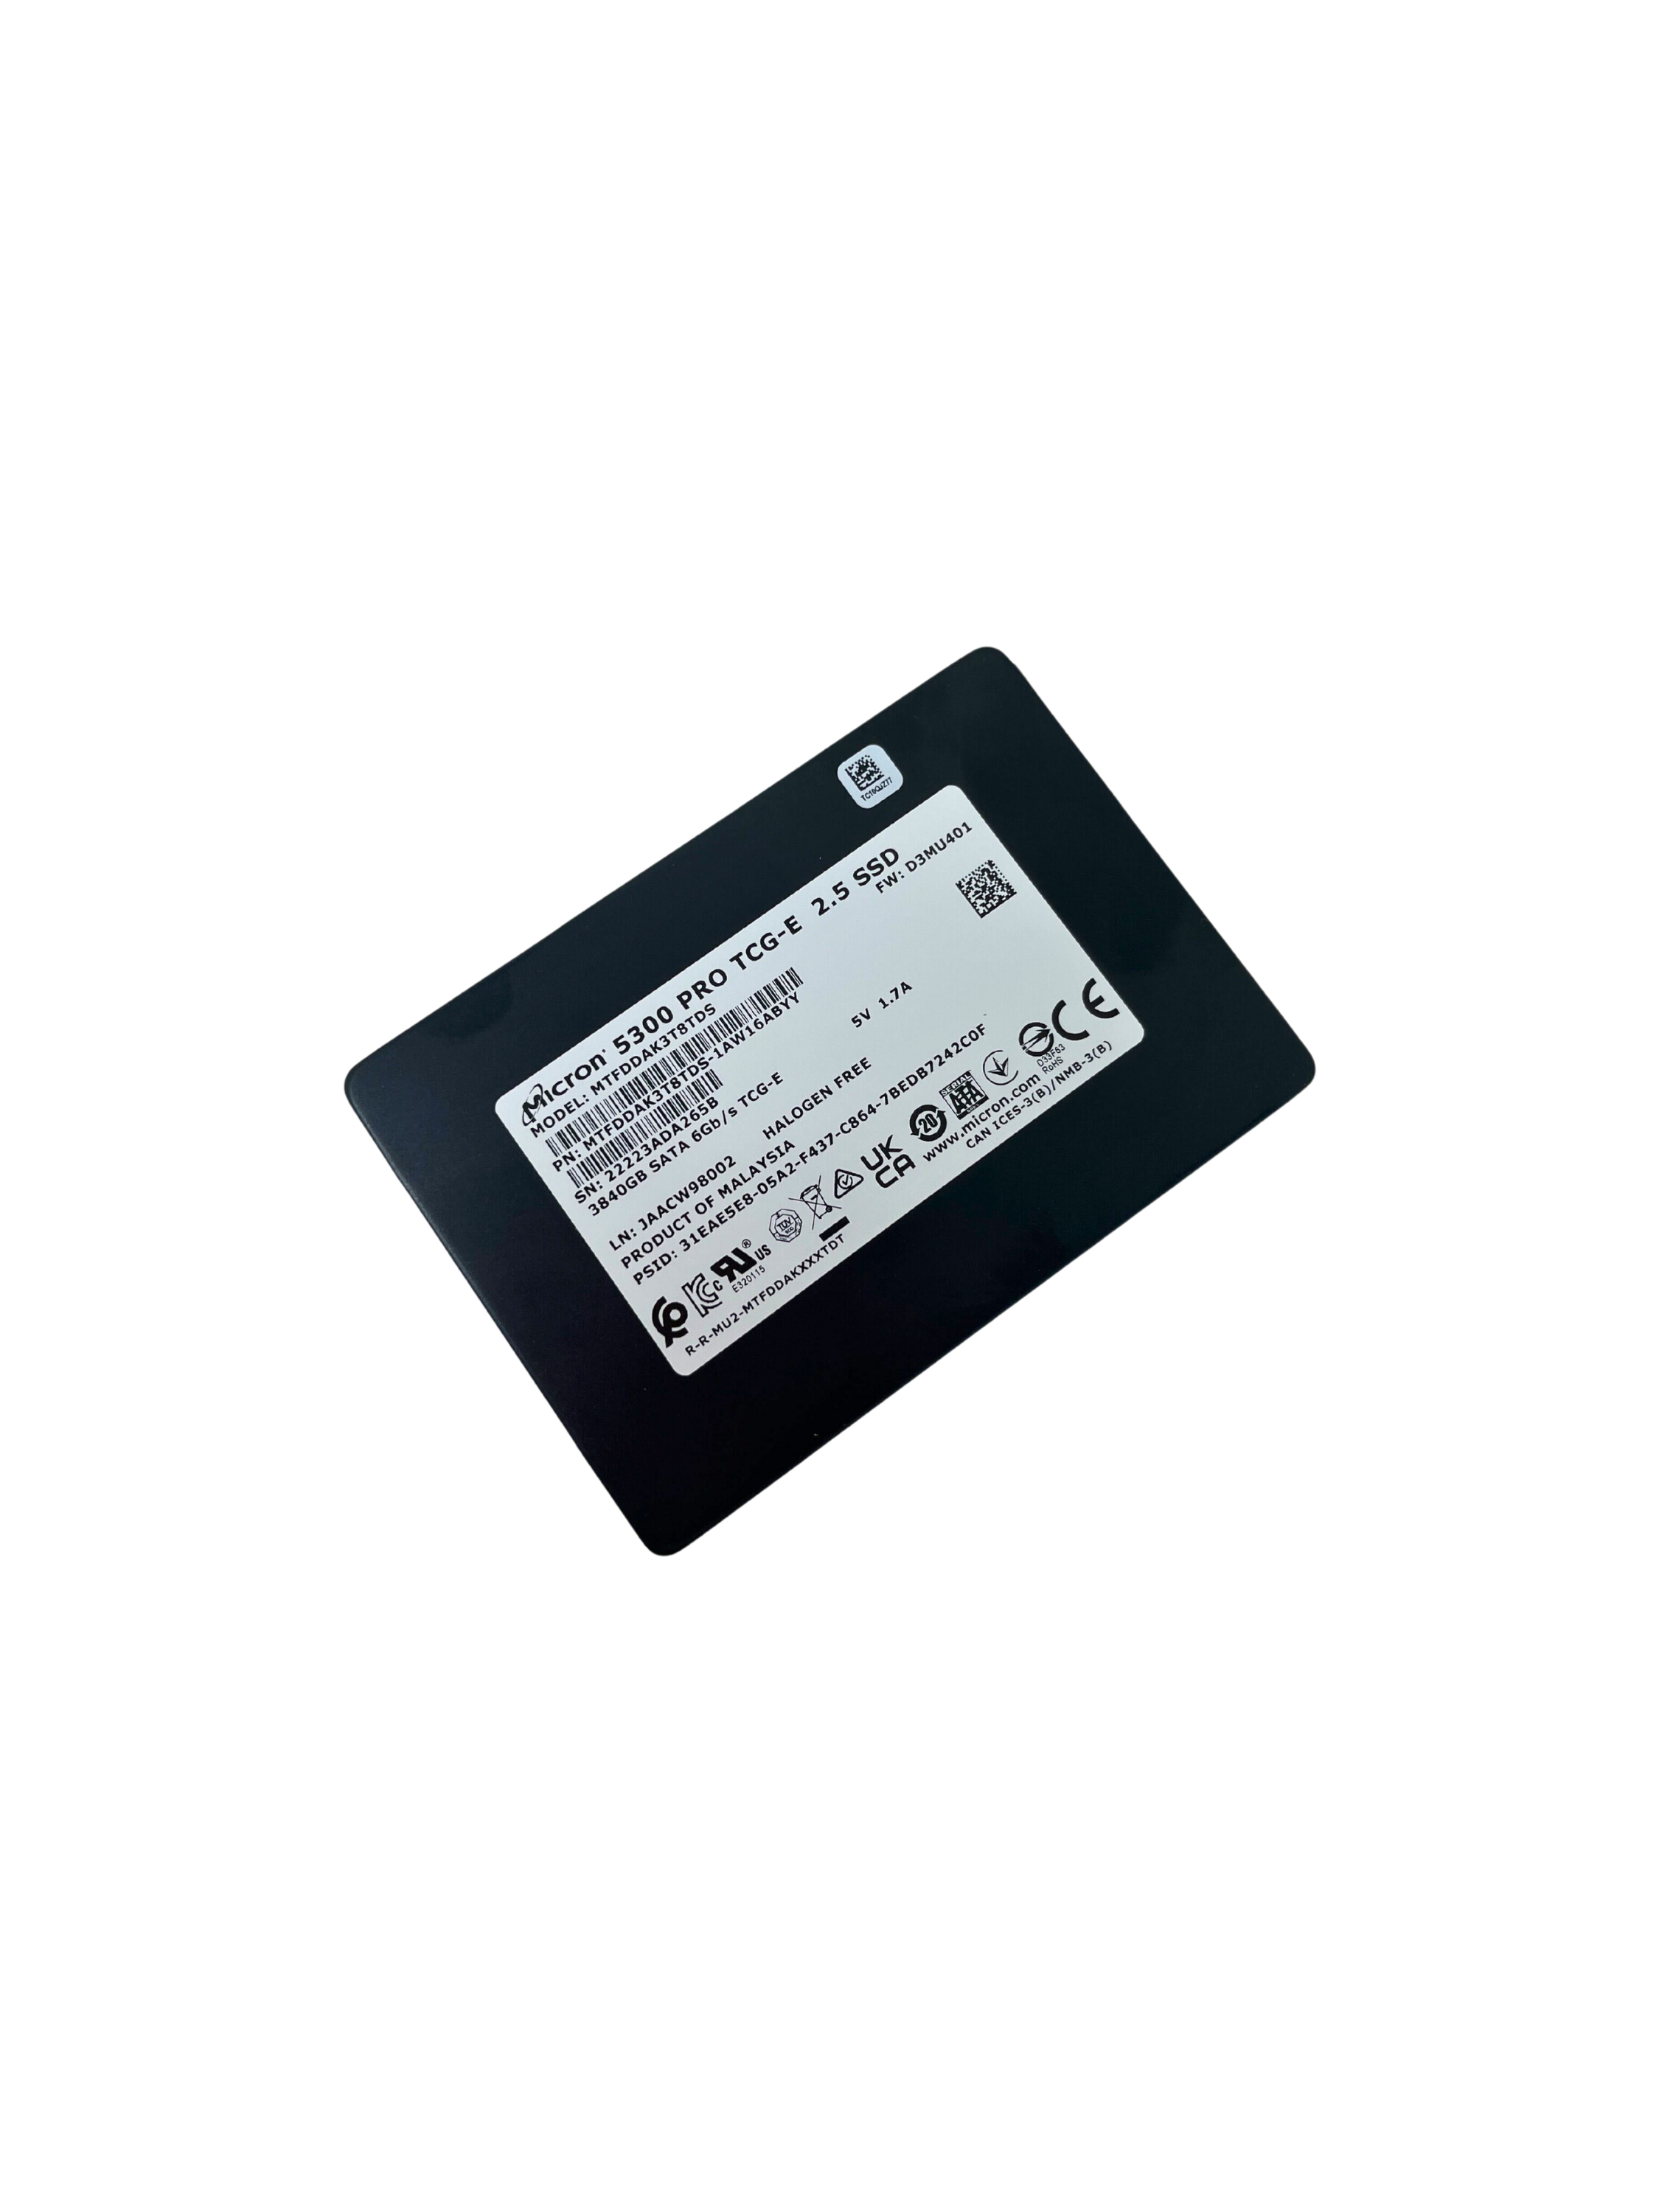 Micron 5300 PRO TCG-E 3.84TB SATA 6Gb/s 2.5